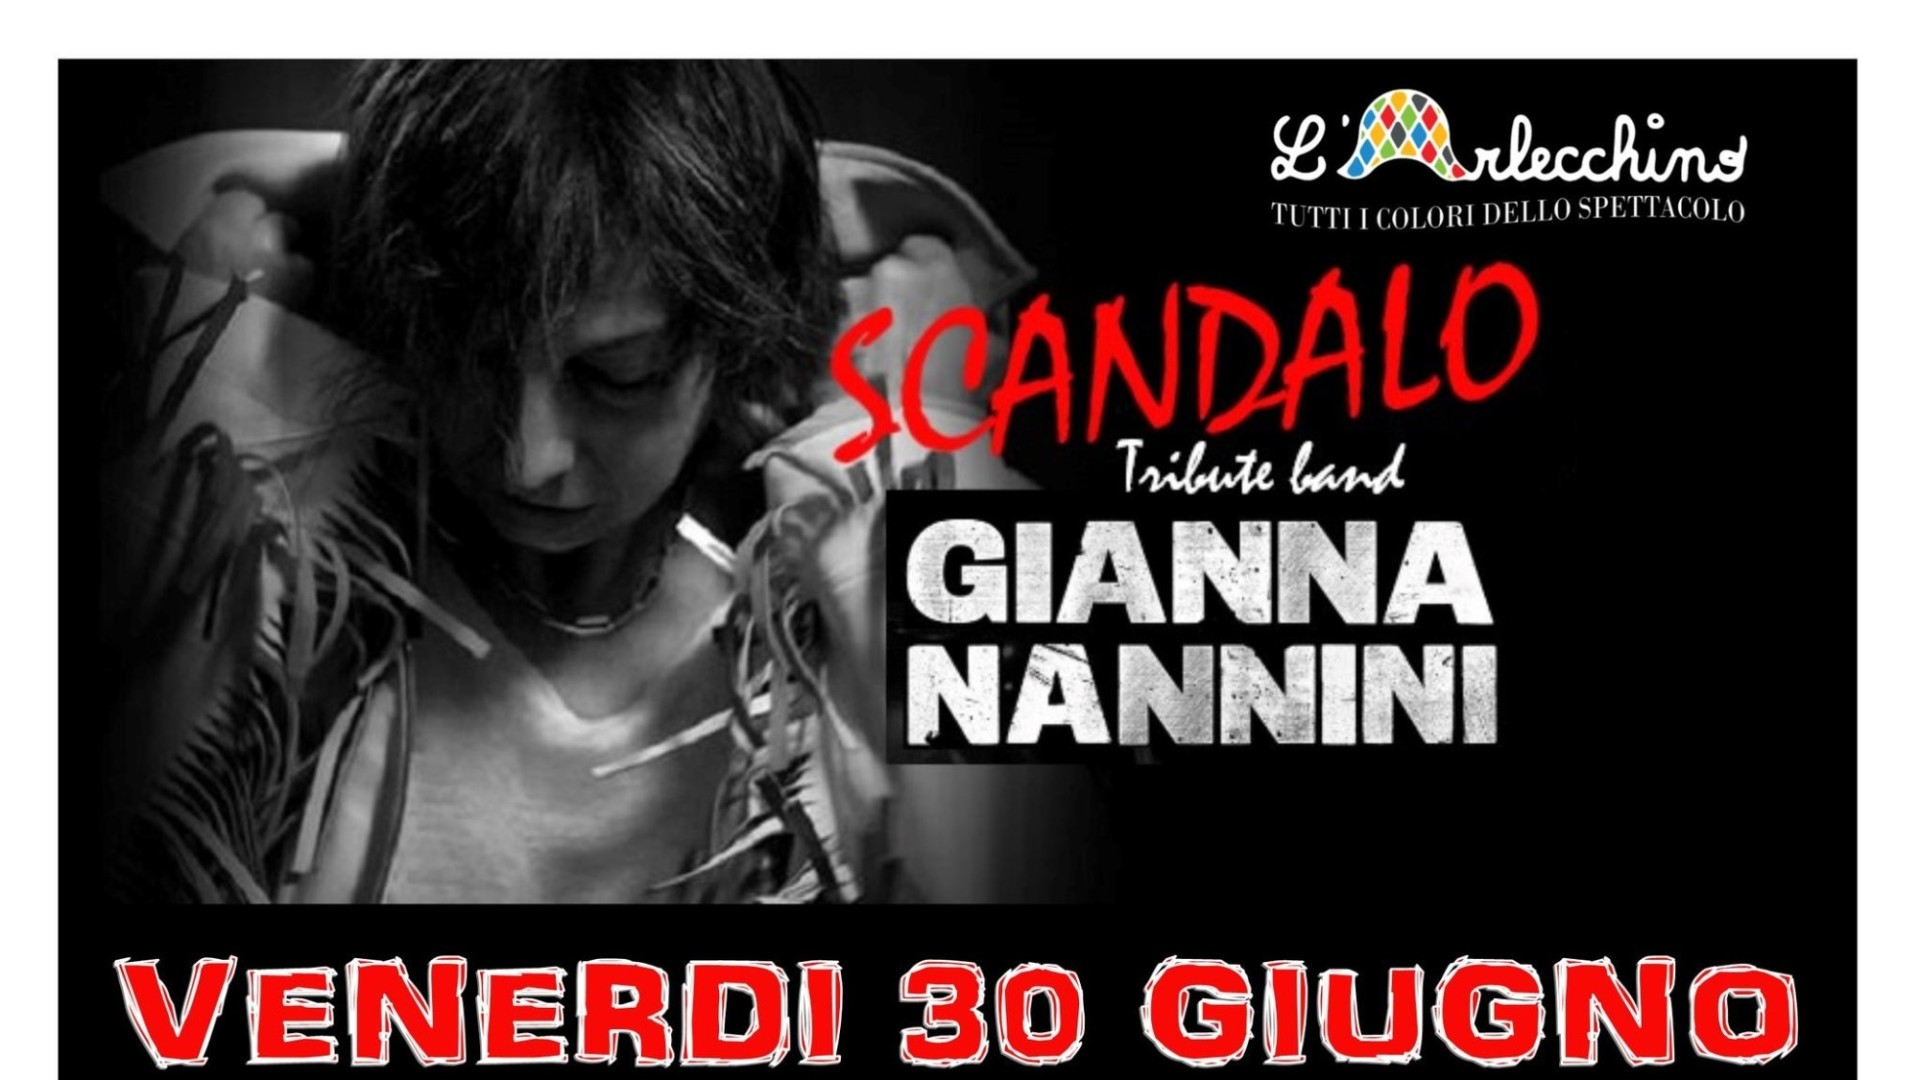 Scandalo - Tributo Gianna Nannini